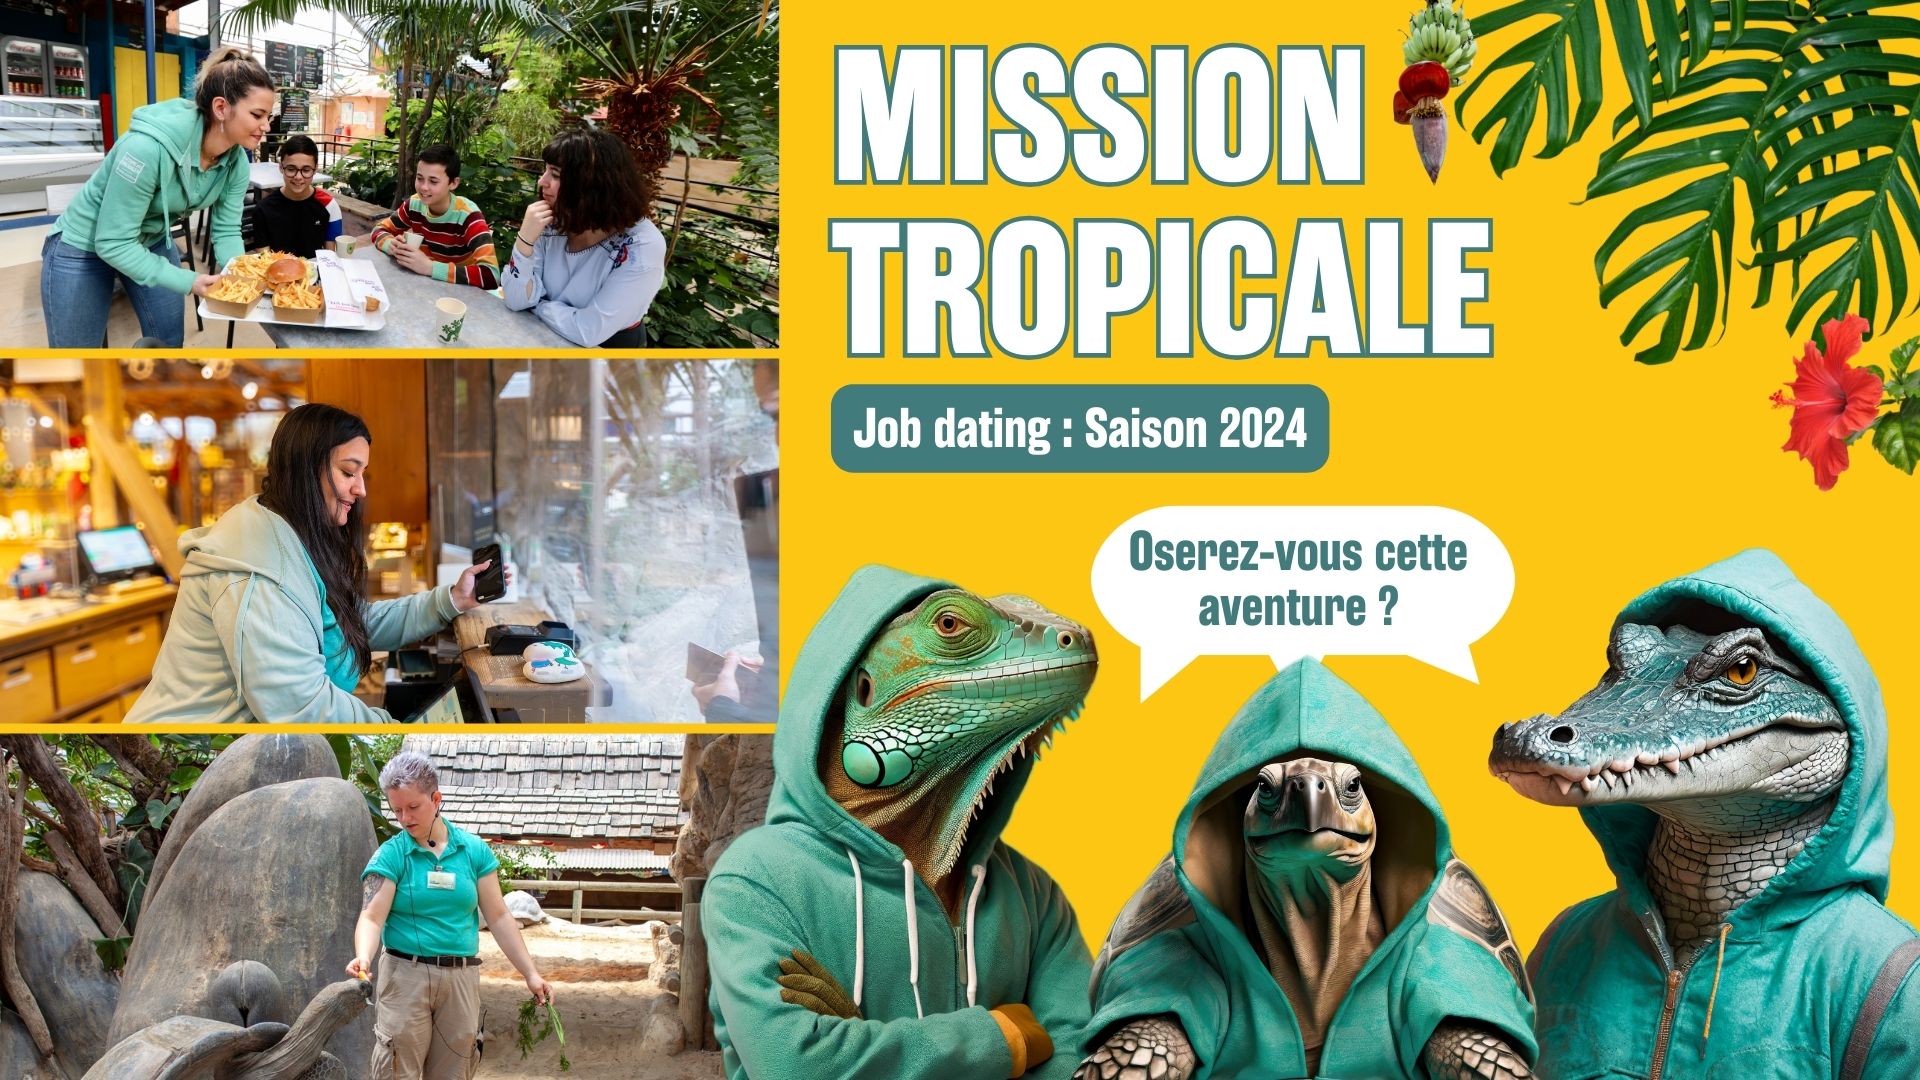 Job dating à La Ferme aux Crocodiles - Réserve Tropicale à Pierrelatte - Samedi 23 mars 2024